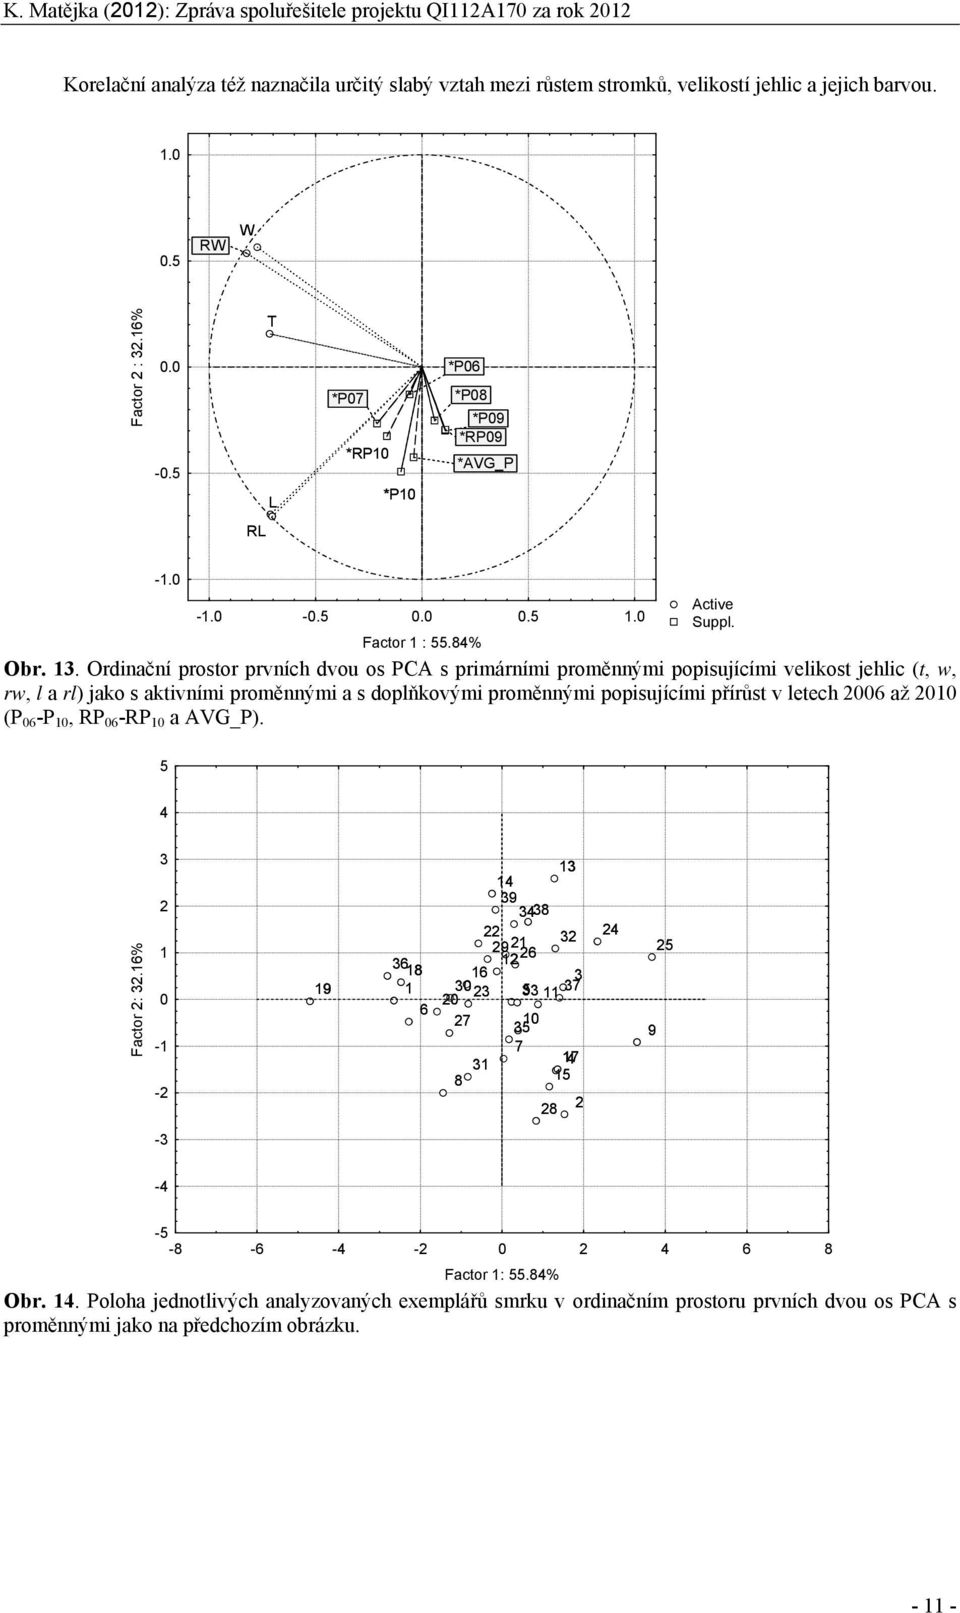 Ordinační prostor prvních dvou os PCA s primárními proměnnými popisujícími velikost jehlic (t, w, rw, l a rl) jako s aktivními proměnnými a s doplňkovými proměnnými popisujícími přírůst v letech 26